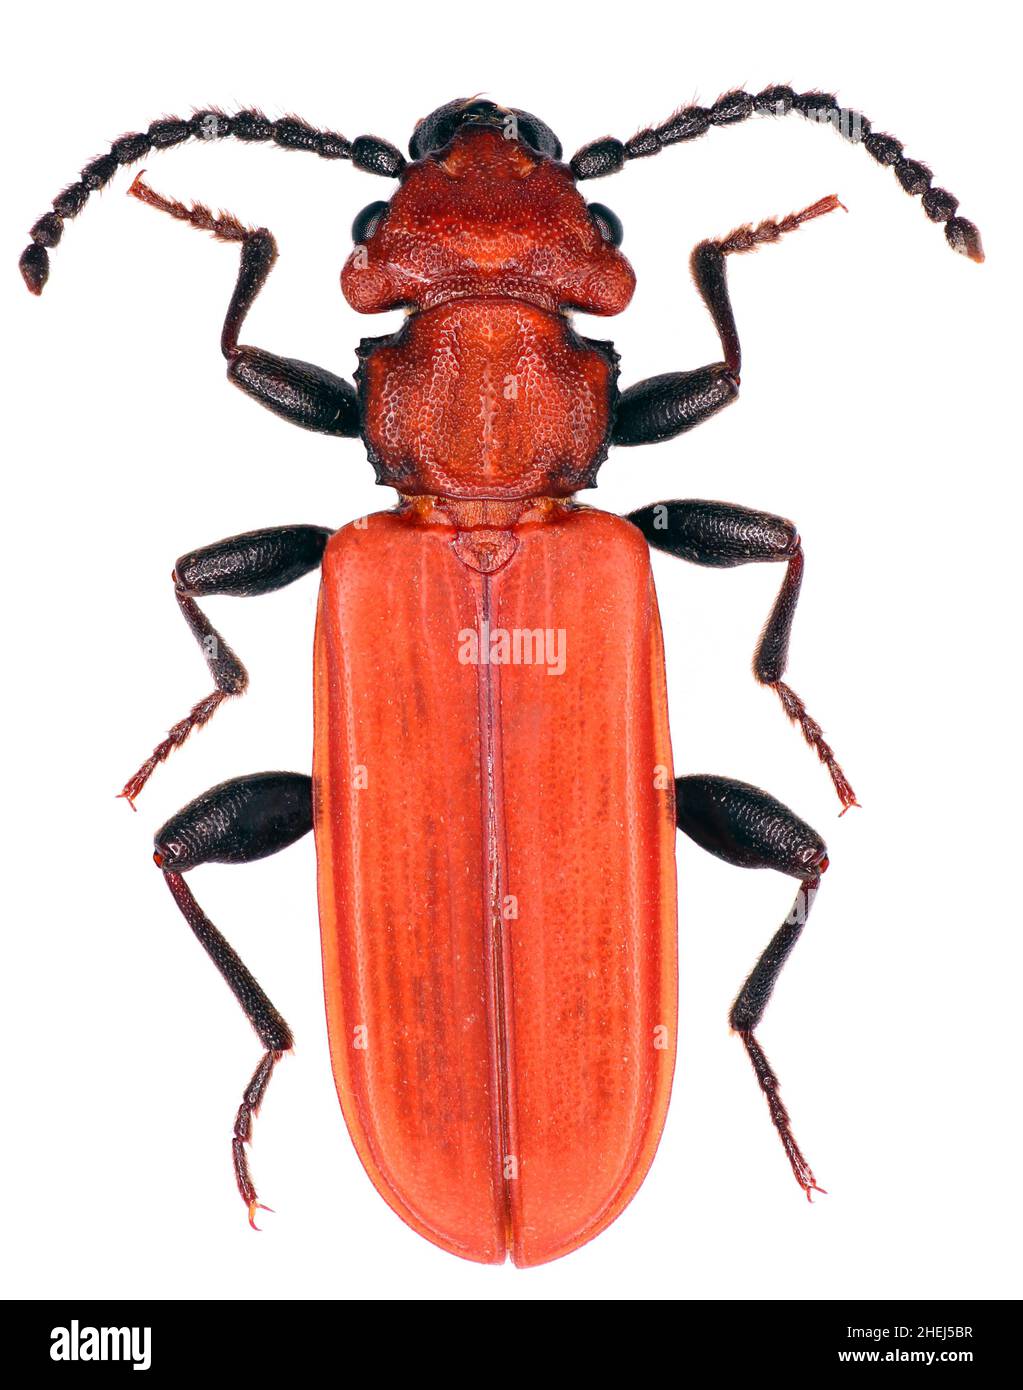 Cucujus cinnaberinus is a species of beetles in the family Cucujidae threatened species in Europe Stock Photo